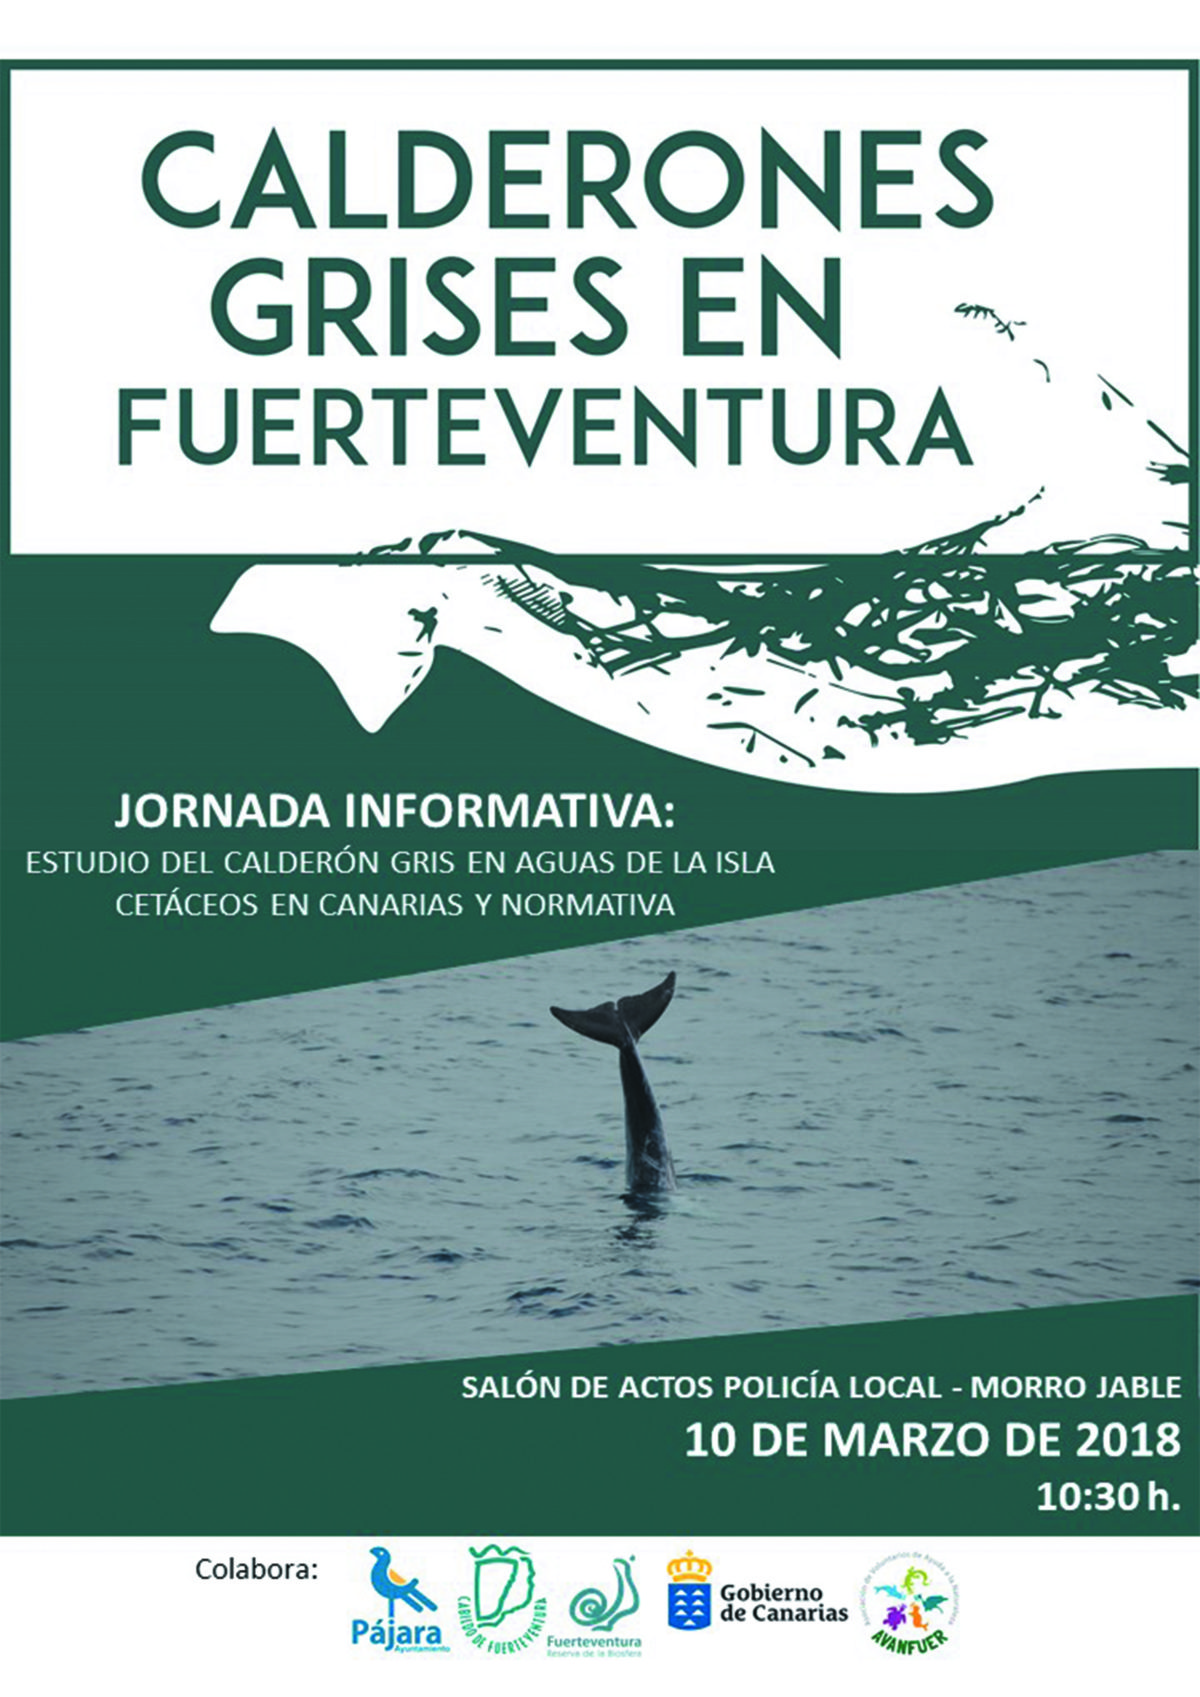 Alberto Sarabia imparte en Morro Jable una jornada informativa sobre el estudio del calderón gris en aguas de Fuerteventura